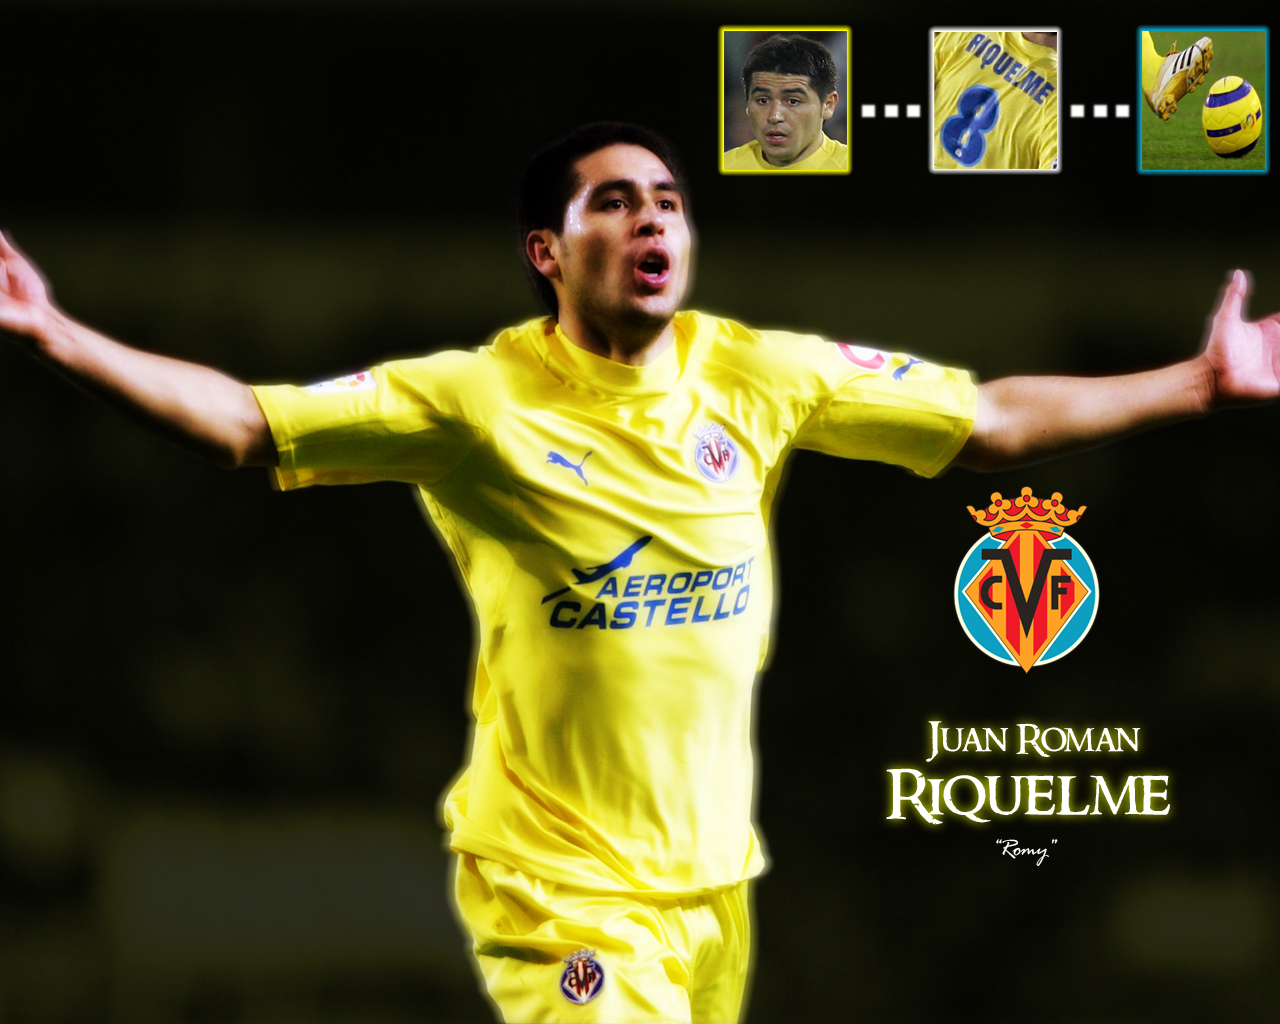 http://images.fanpop.com/images/image_uploads/Juan-Roman-Riquelme-soccer-421096_1280_1024.jpg